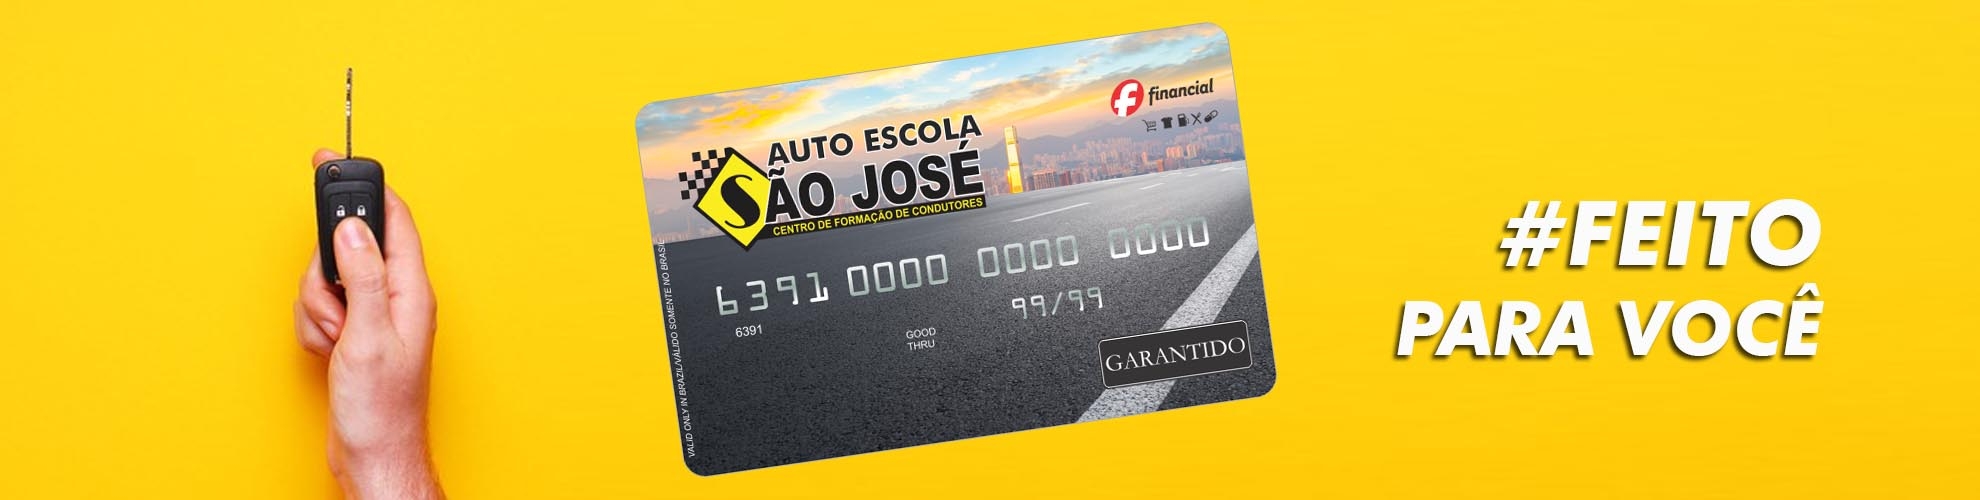 Cartão de Crédito Auto Escola São José